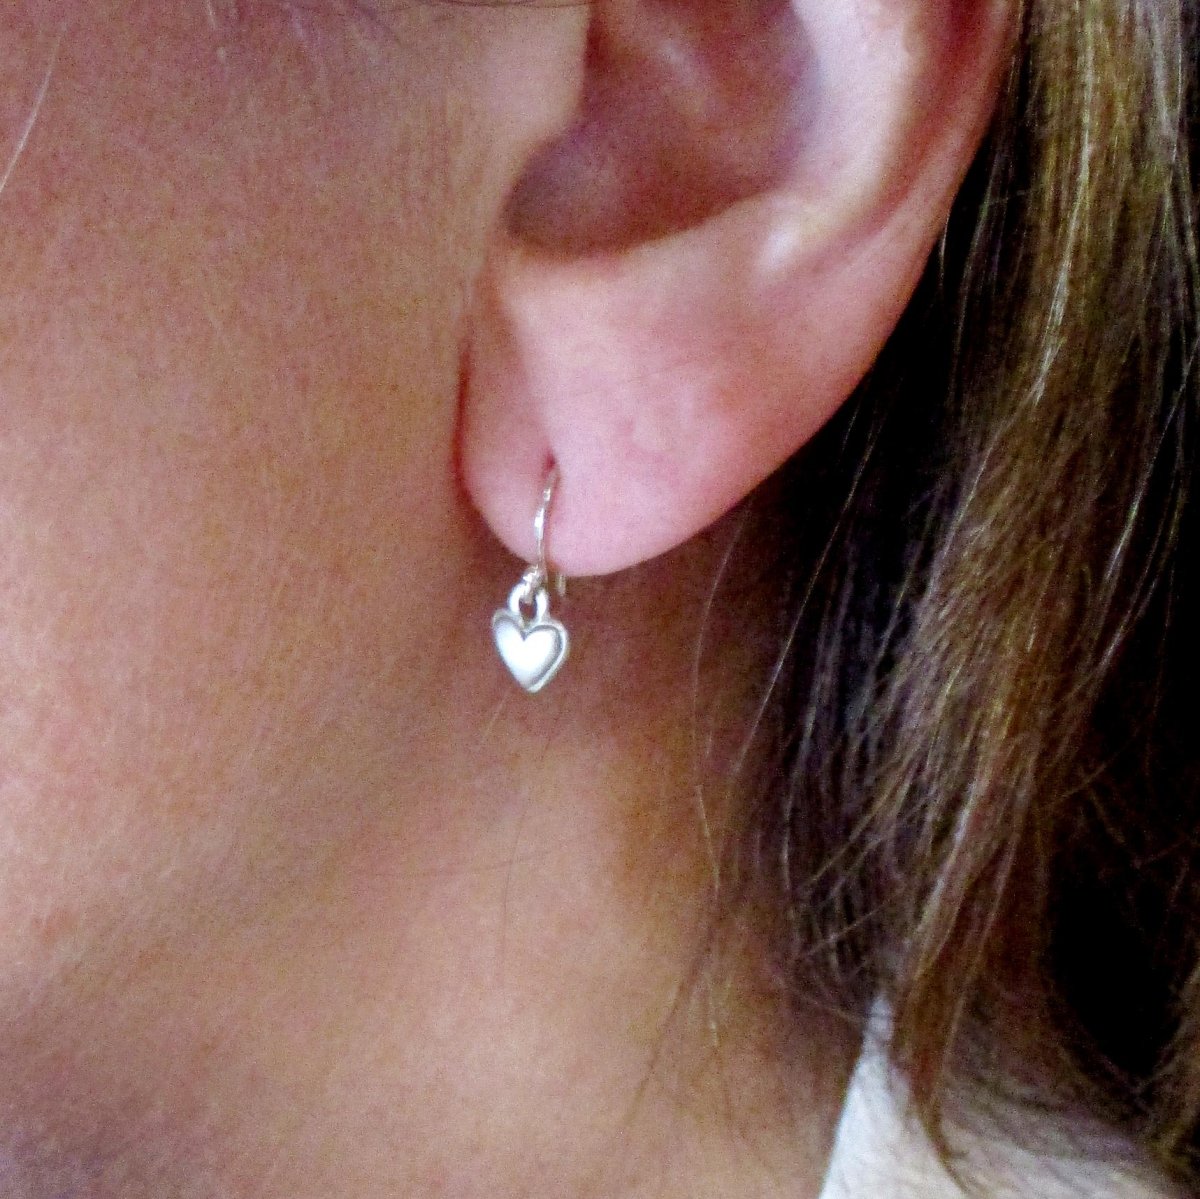 Sterling Silver Mini Double Heart Earrings - Luxe Design Jewellery